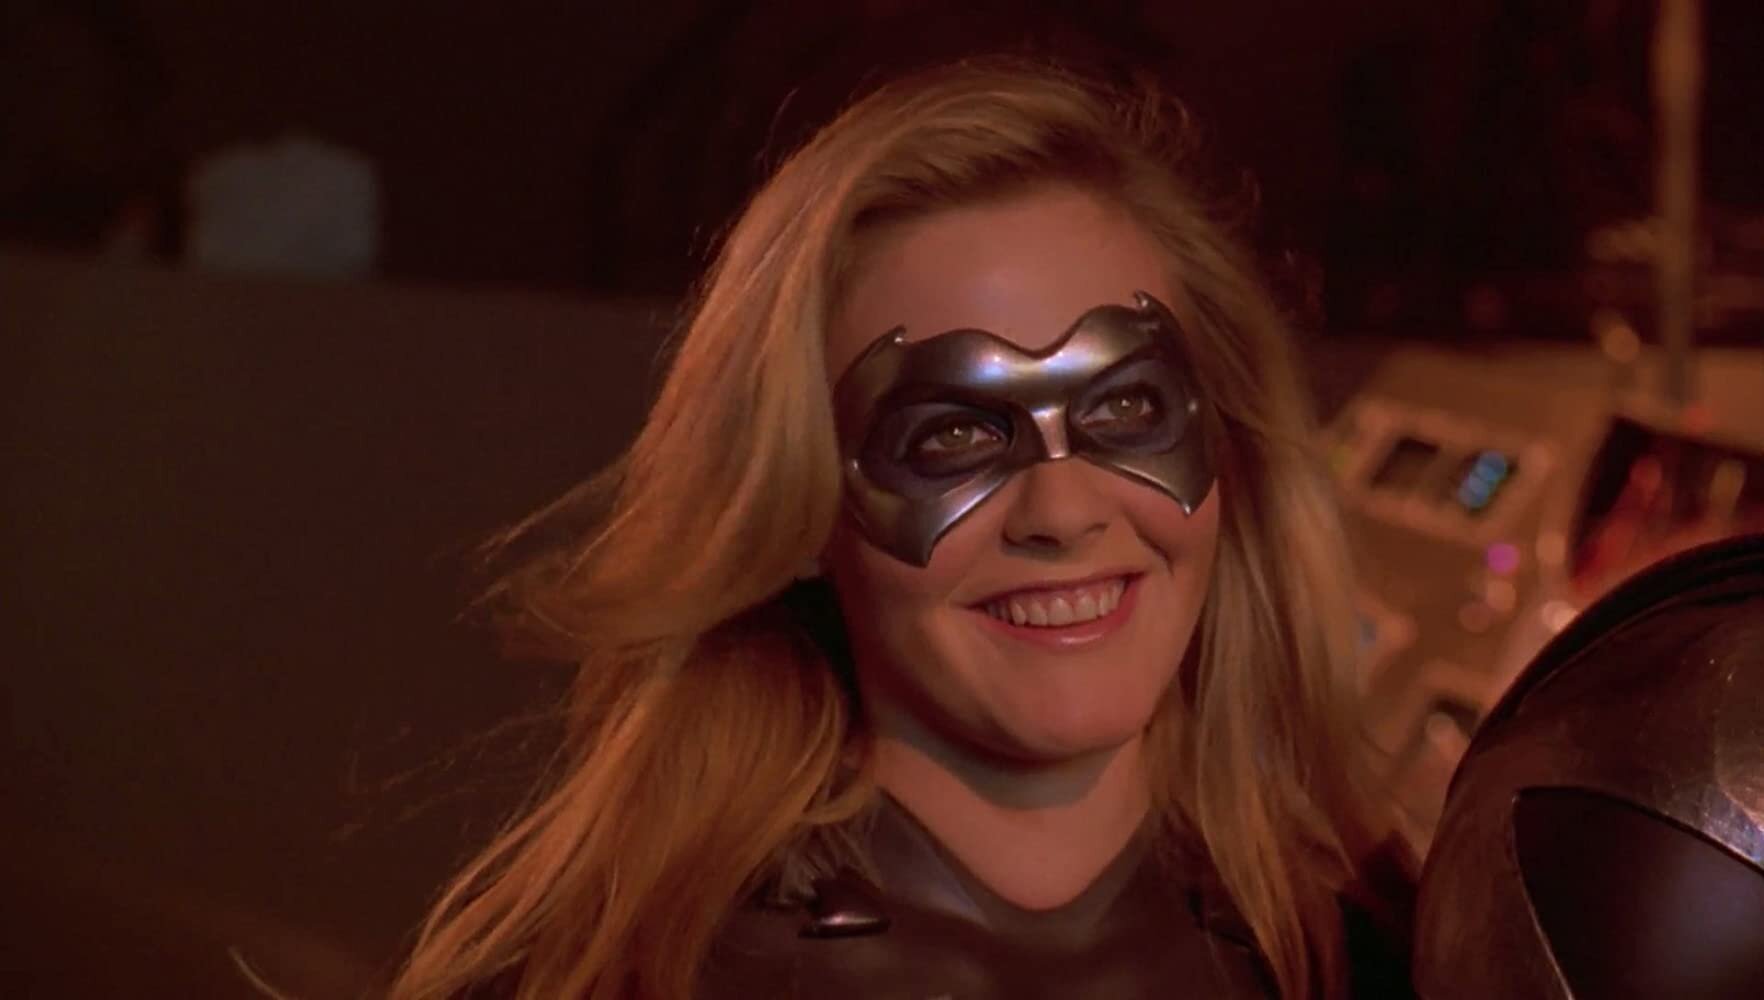 Alicia Silverstone in "Batman and Robin"